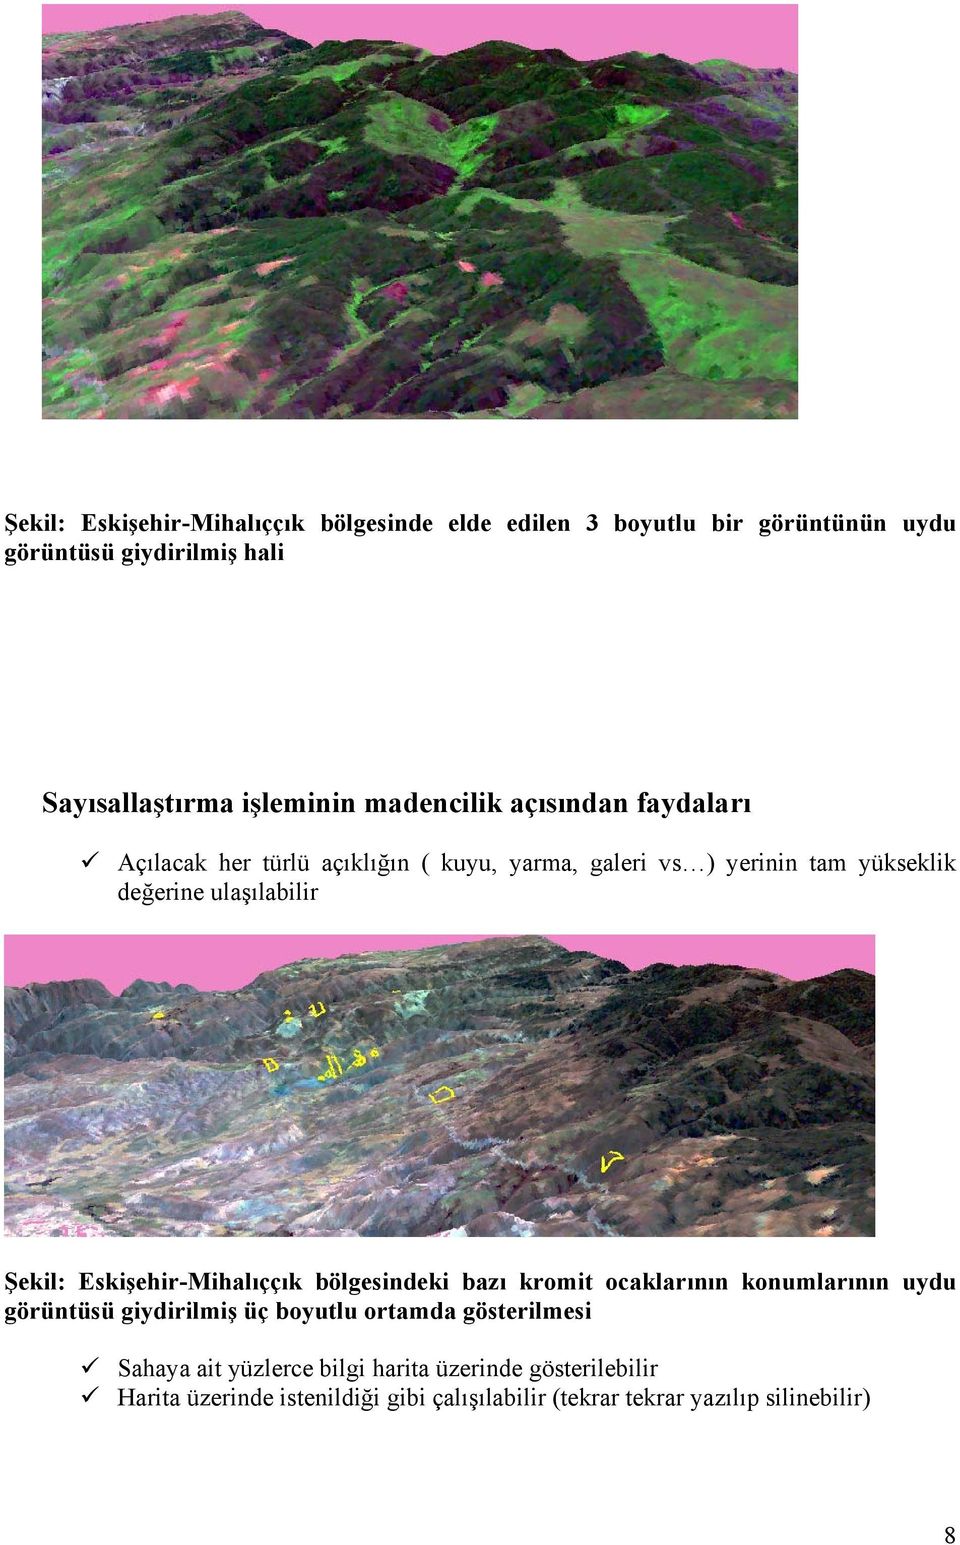 Şekil: Eskişehir-Mihalıççık bölgesindeki bazı kromit ocaklarının konumlarının uydu görüntüsü giydirilmiş üç boyutlu ortamda